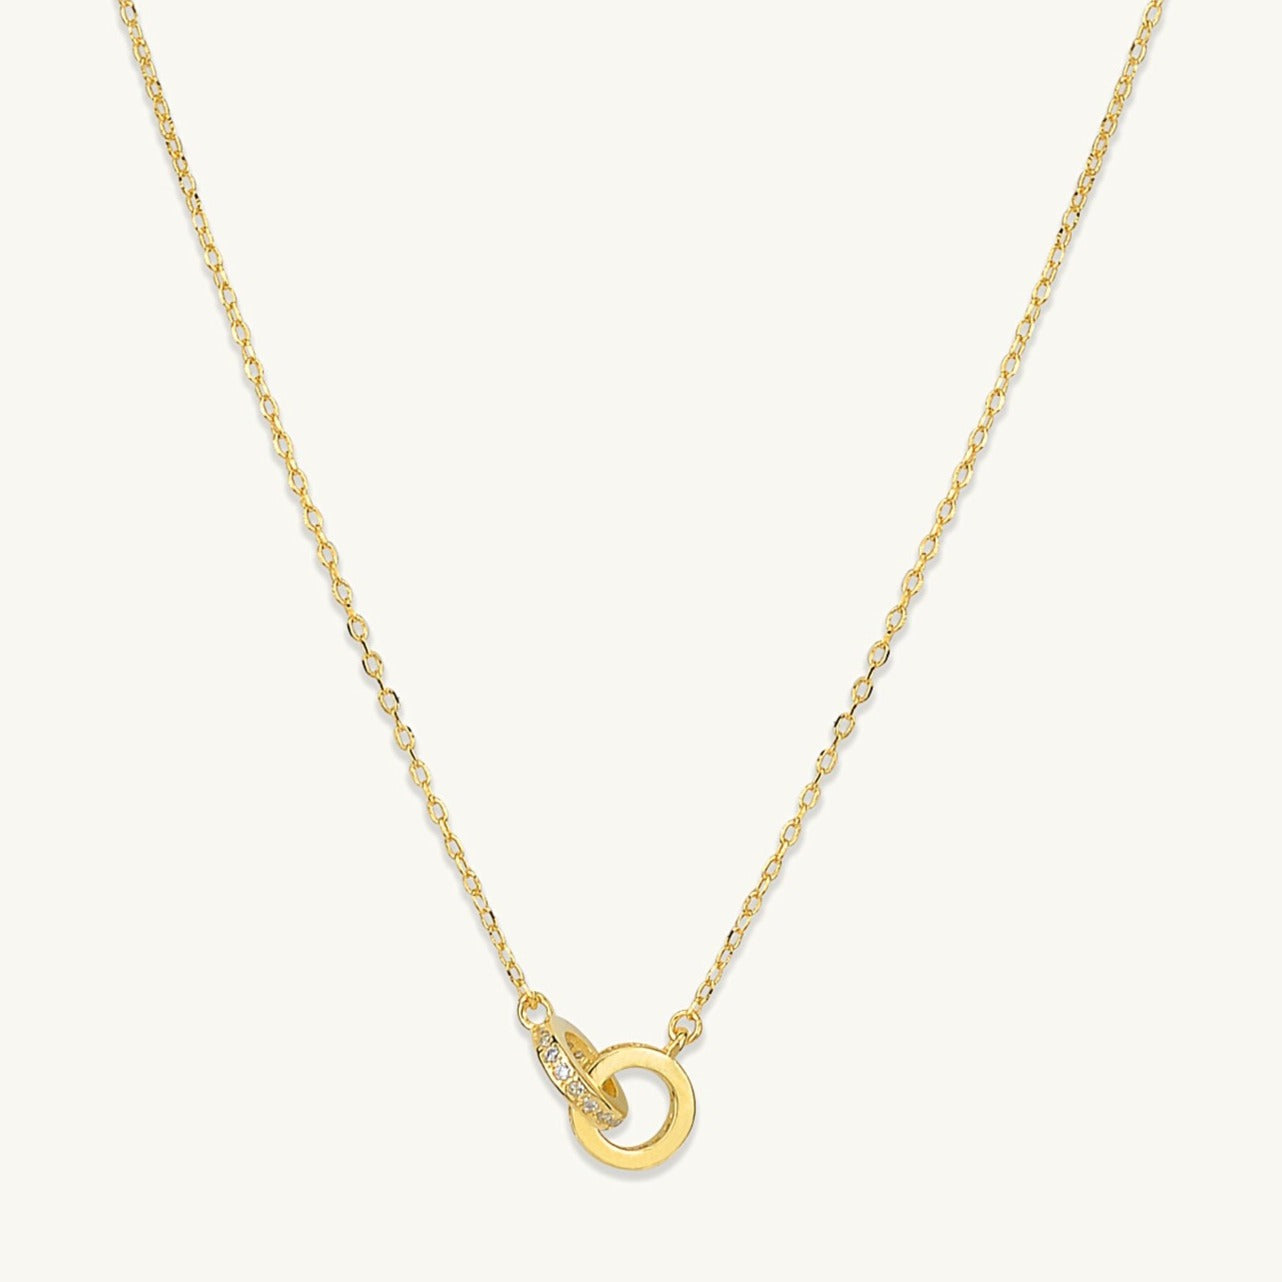 Bond Sapphire Chain Necklace